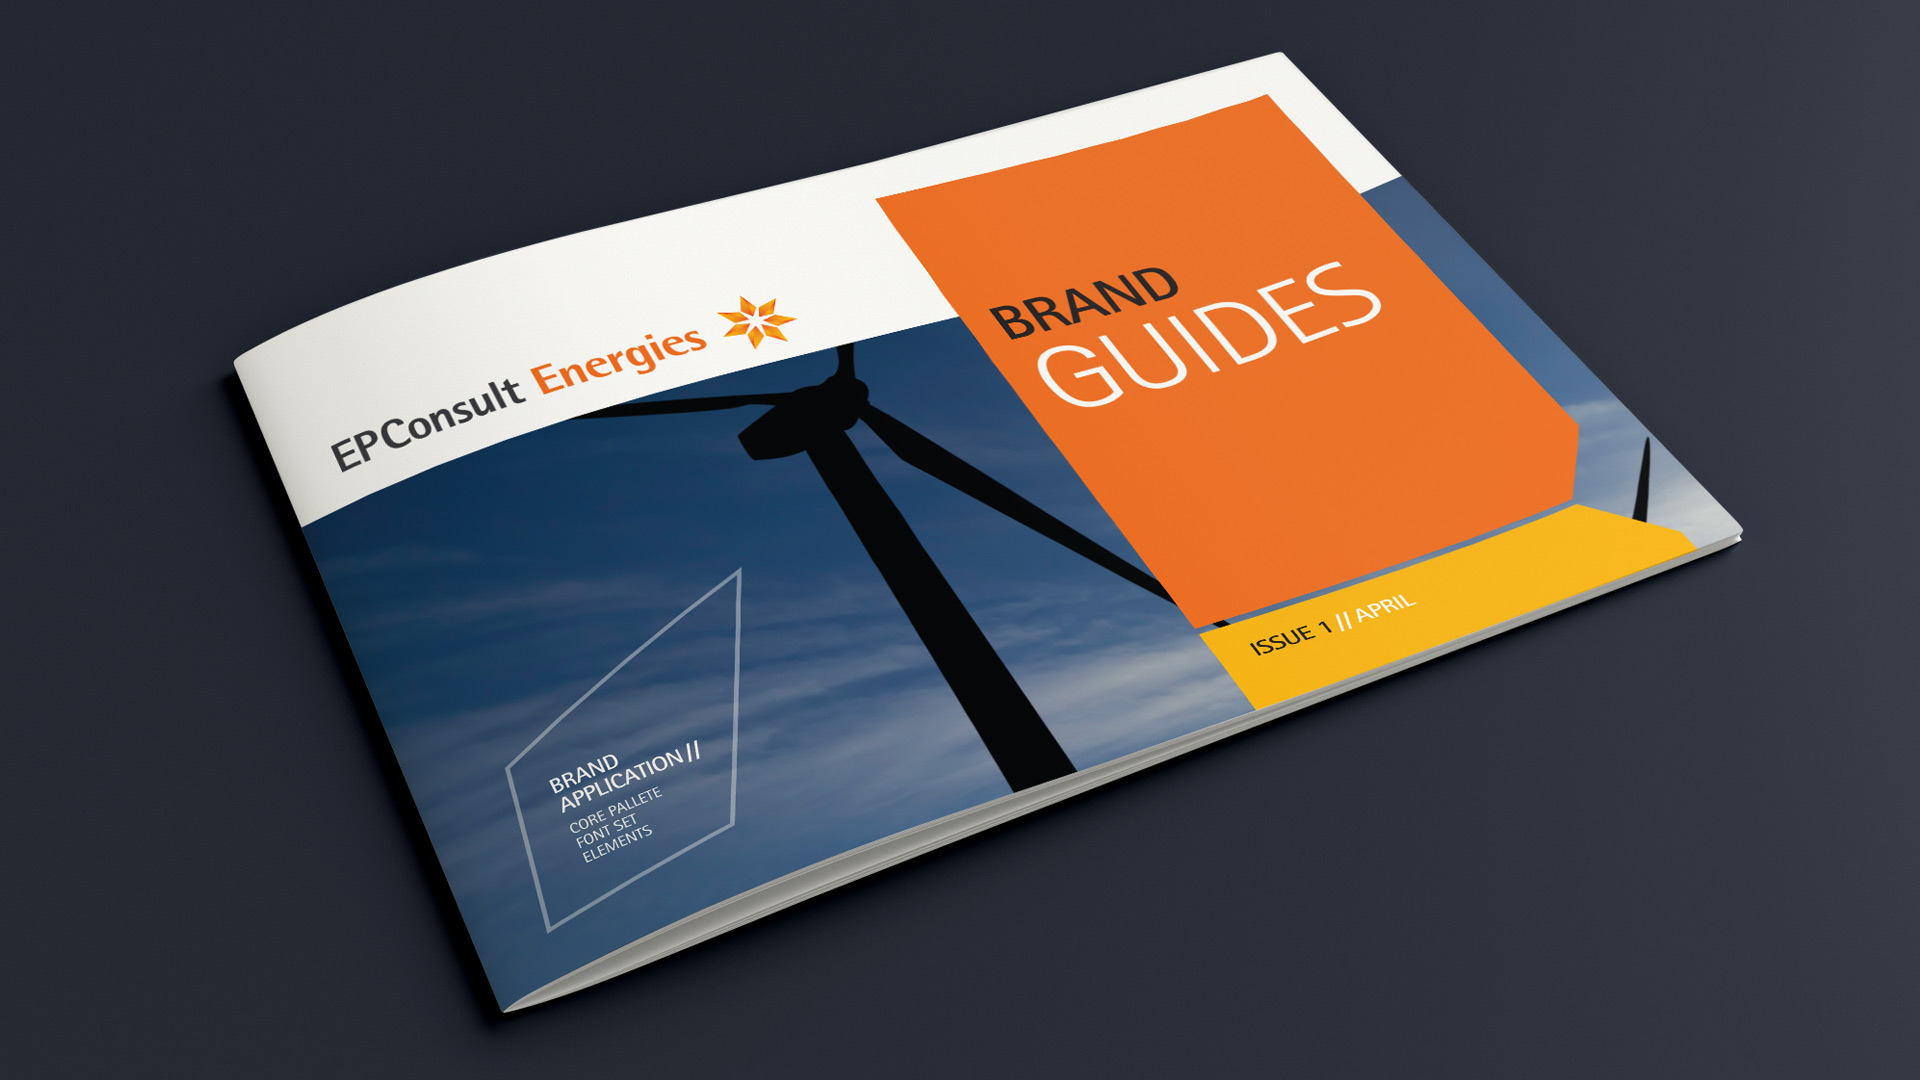 design guides for branding